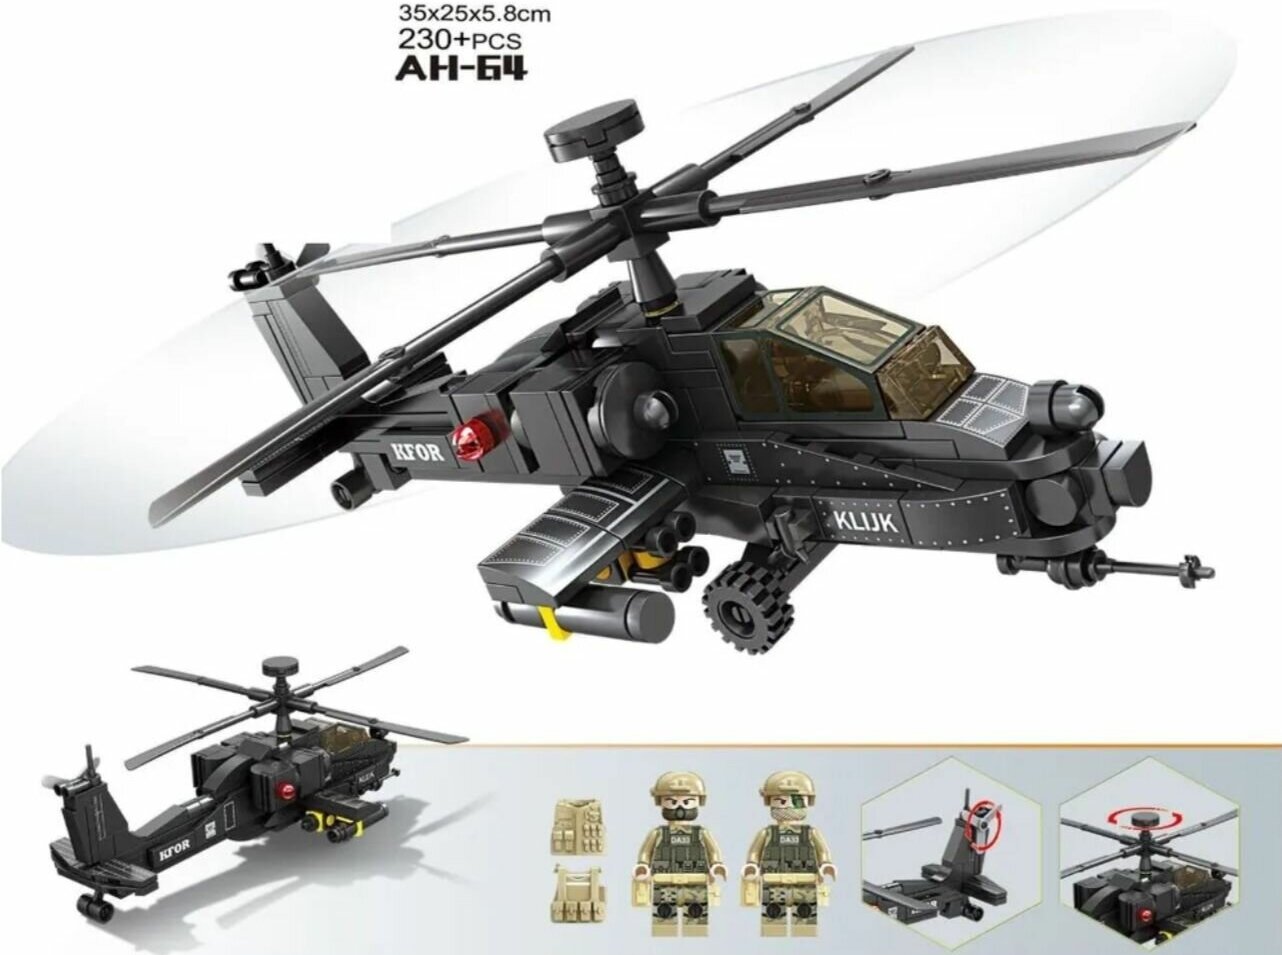 Конструктор военный вертолёт AH 64 230 деталей